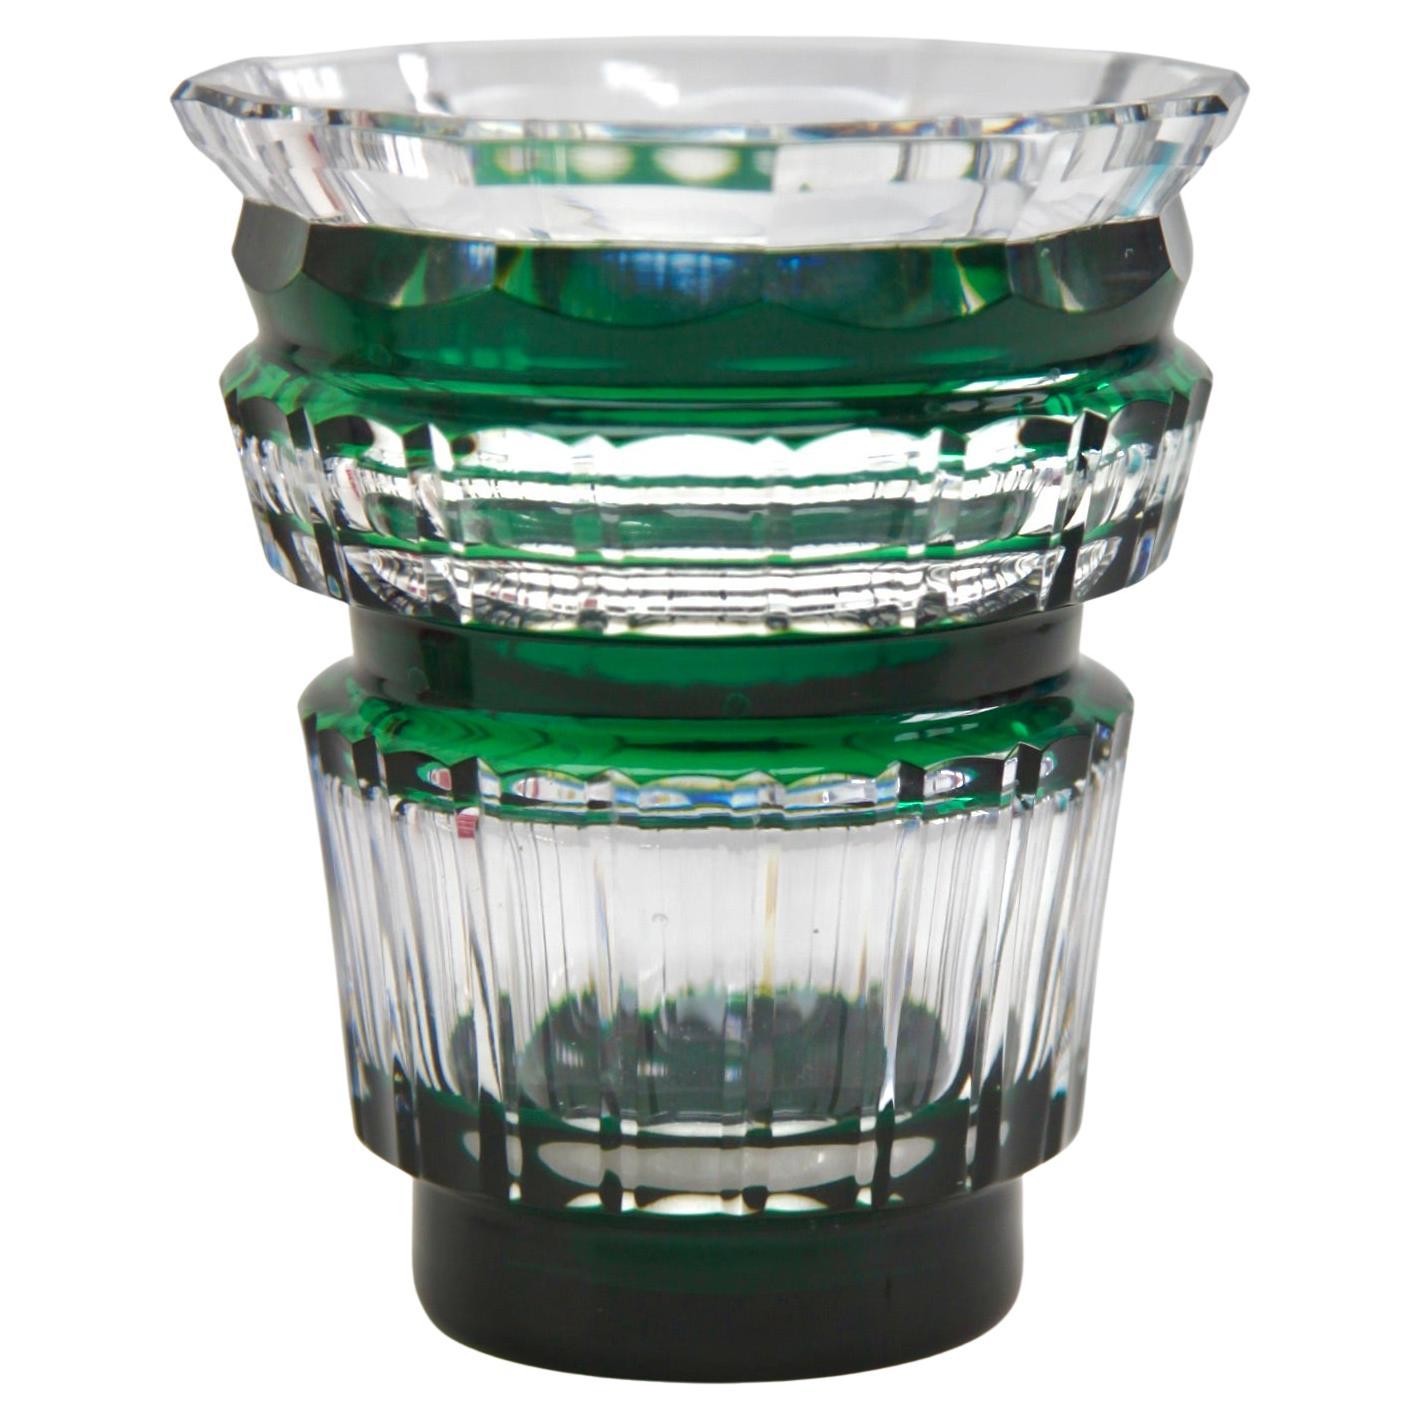 Art déco-Vase aus grünem Kristall von Val Saint-Lambert, geschliffen bis klar, 1950er Jahre